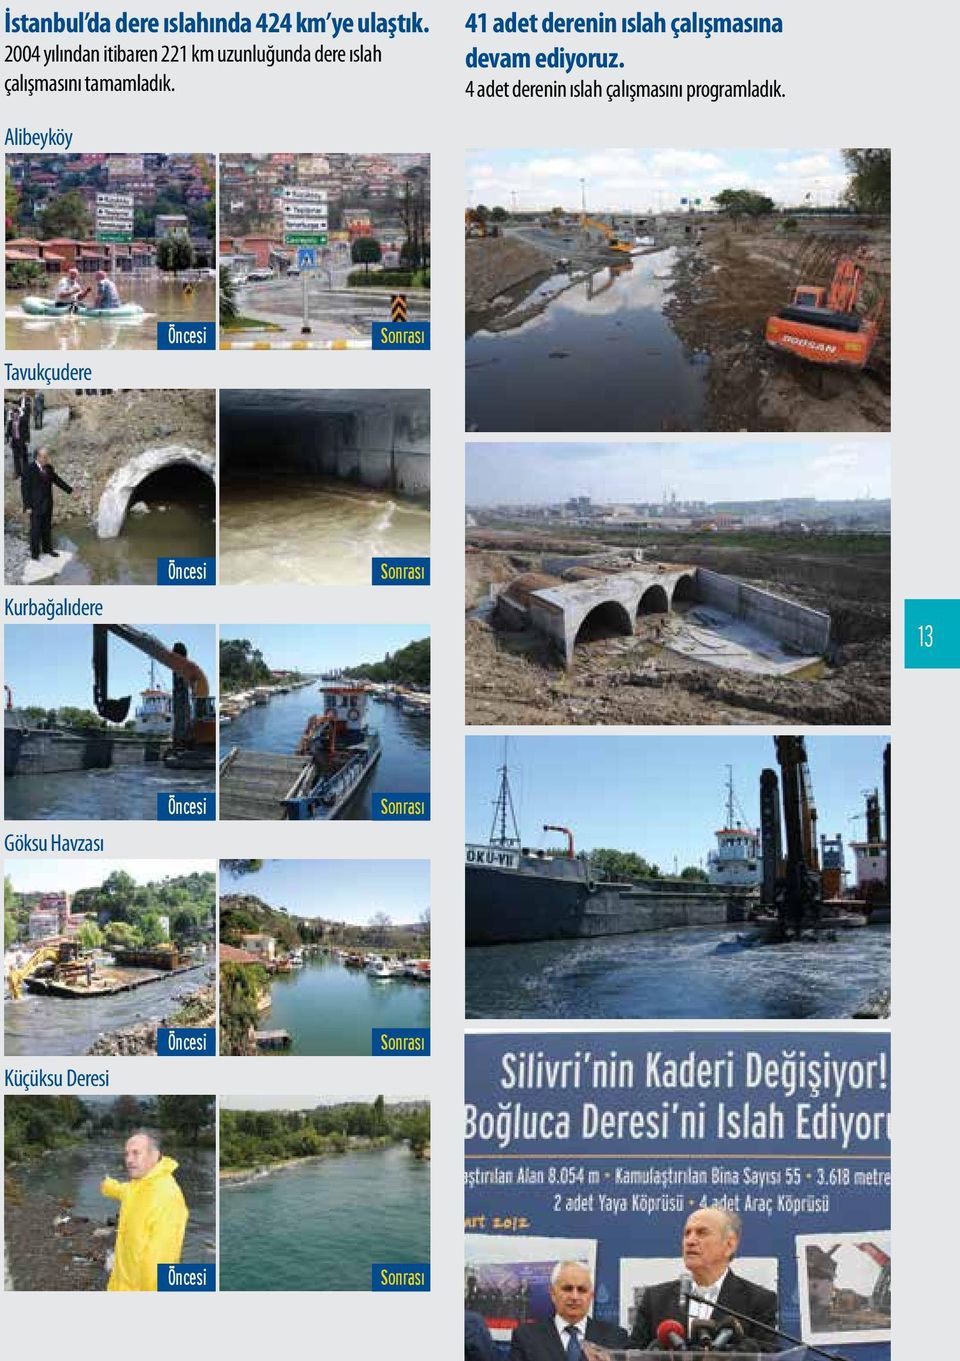 Alibeyköy 41 adet derenin ıslah çalışmasına devam ediyoruz.